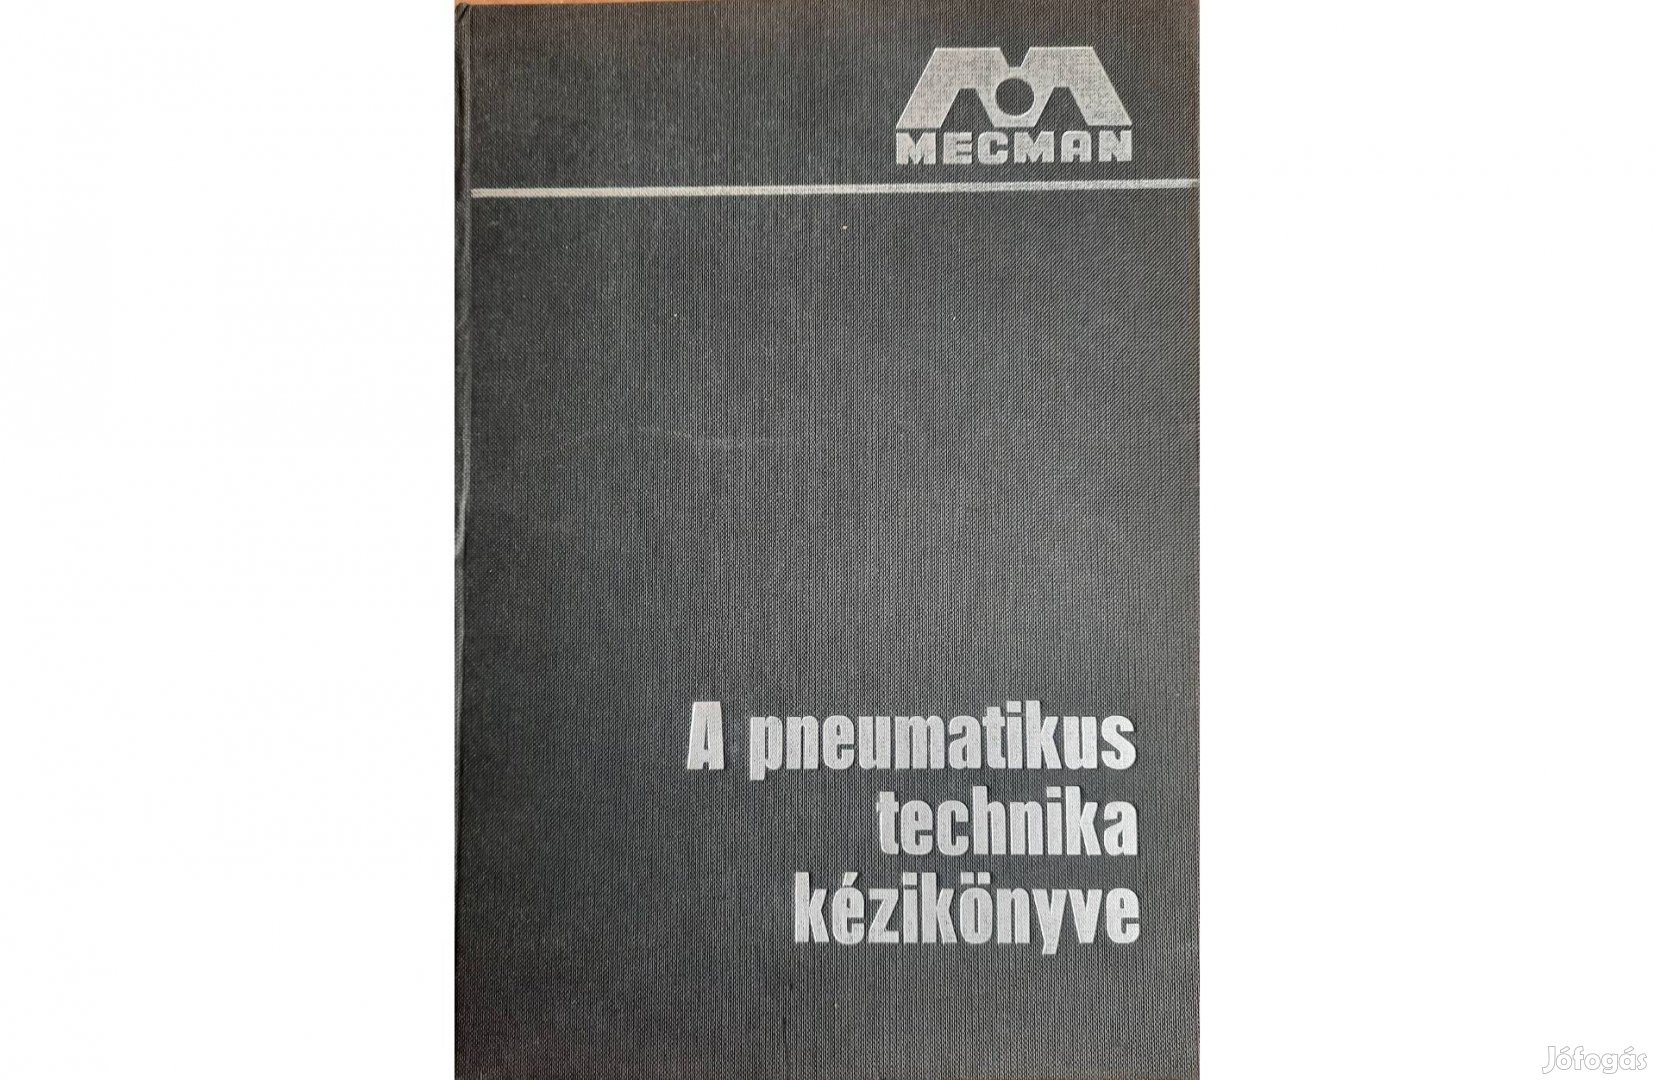 A pneumatikus technika kézikönyve című könyv eladó